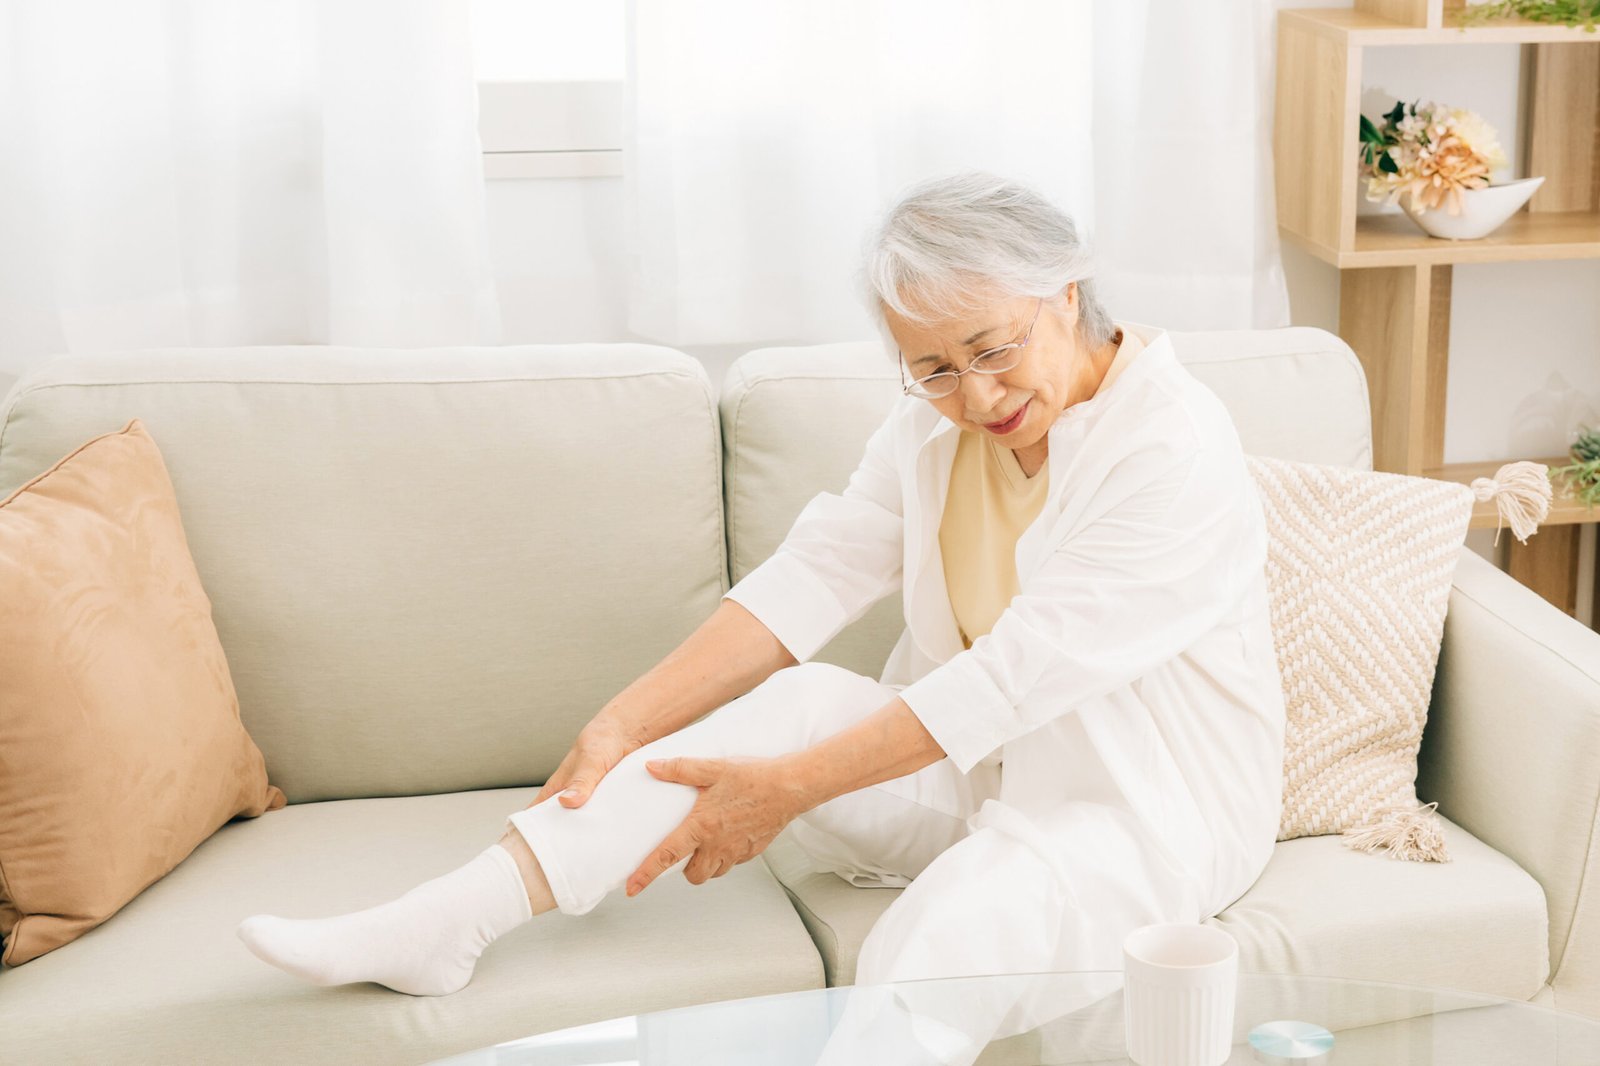 Fotografia de idosa sentada em seu sofá. Ela está com a perna direita sobre o sofá enquanto passa a mão na região na panturrilha. Sua expressão é de dor.